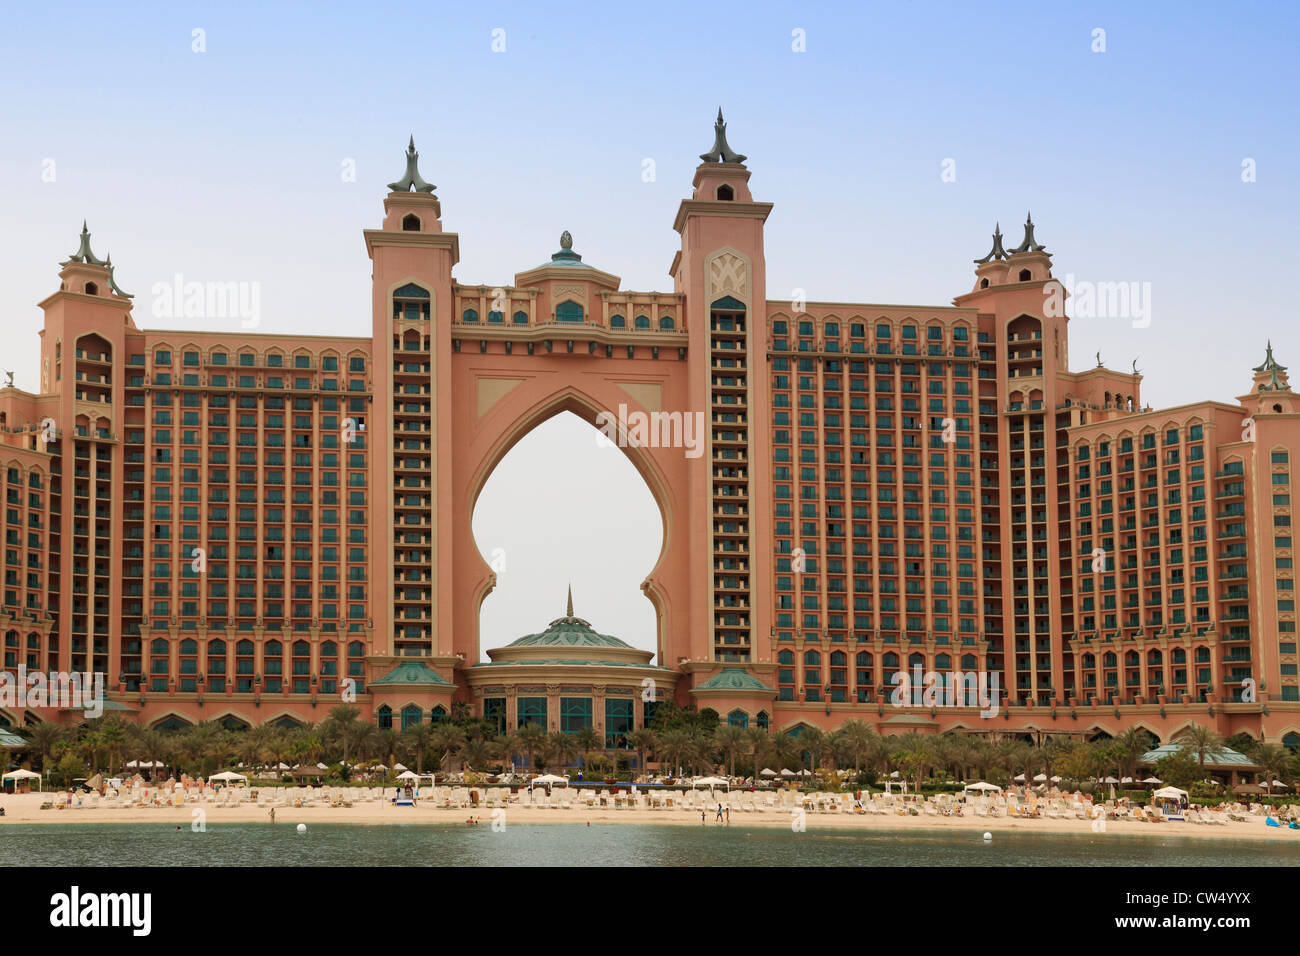 3674. H Atlantis, Palm Jumeirah, Dubai, UAE. Stock Photo